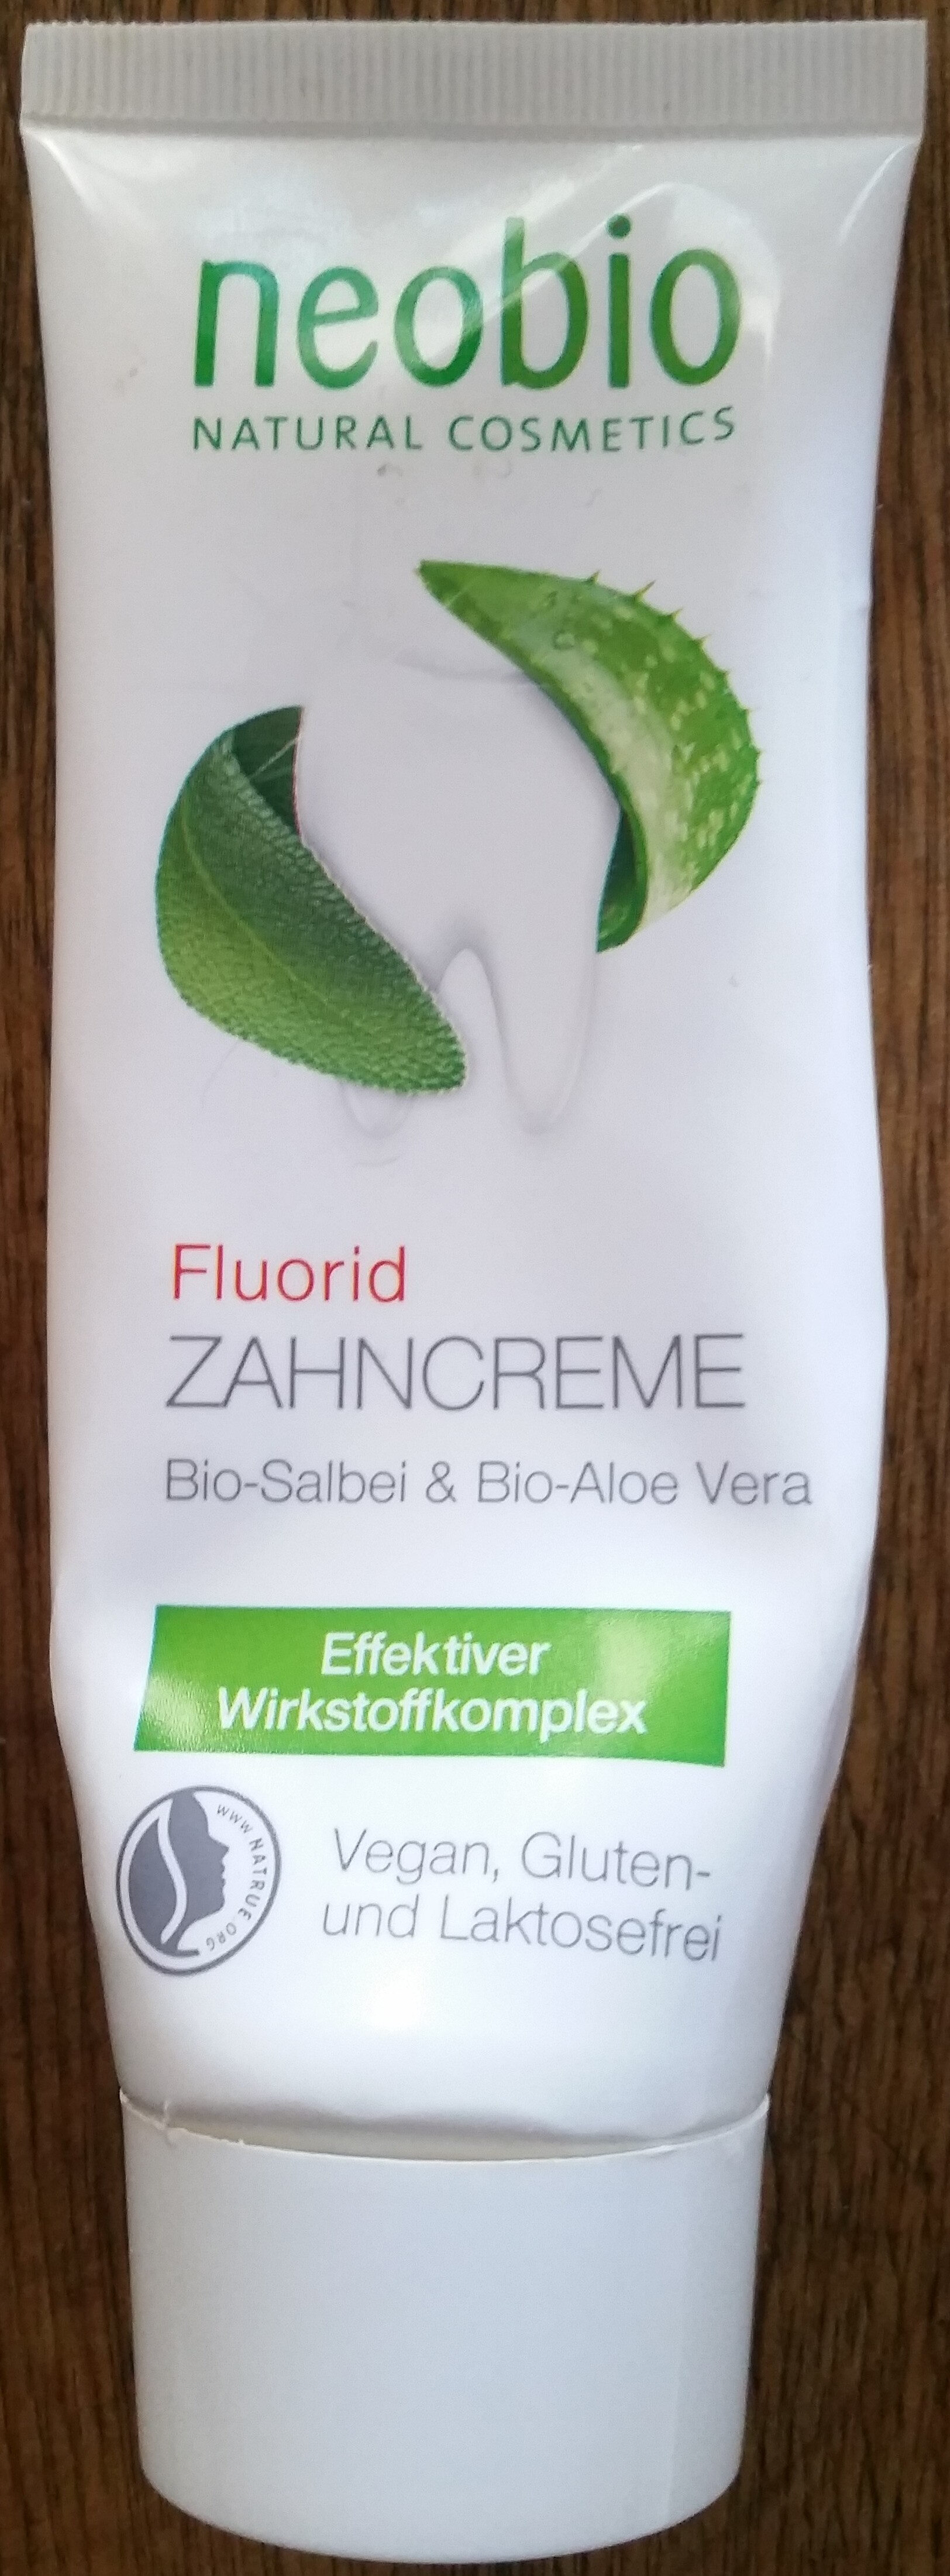 Flourid Zahncreme - Produit - de